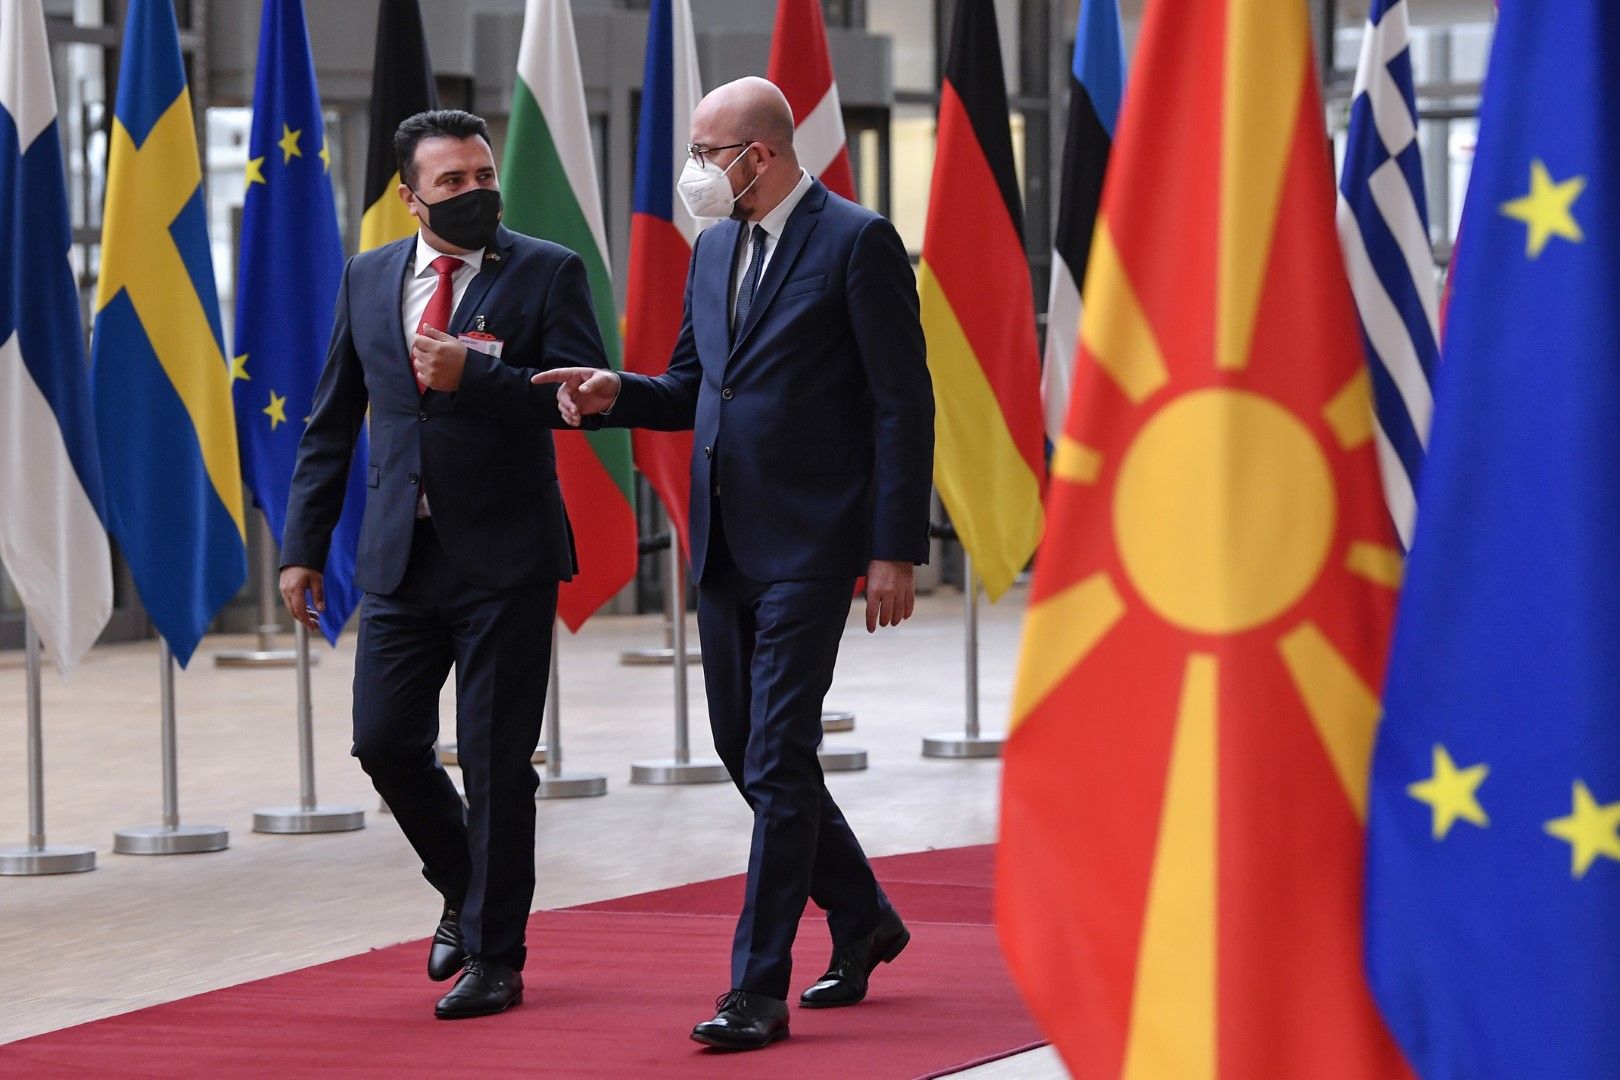 Зоран Заев посети Европейският съвет в Брюксел на 19 май и разговаря с председателя Шарл Мишел